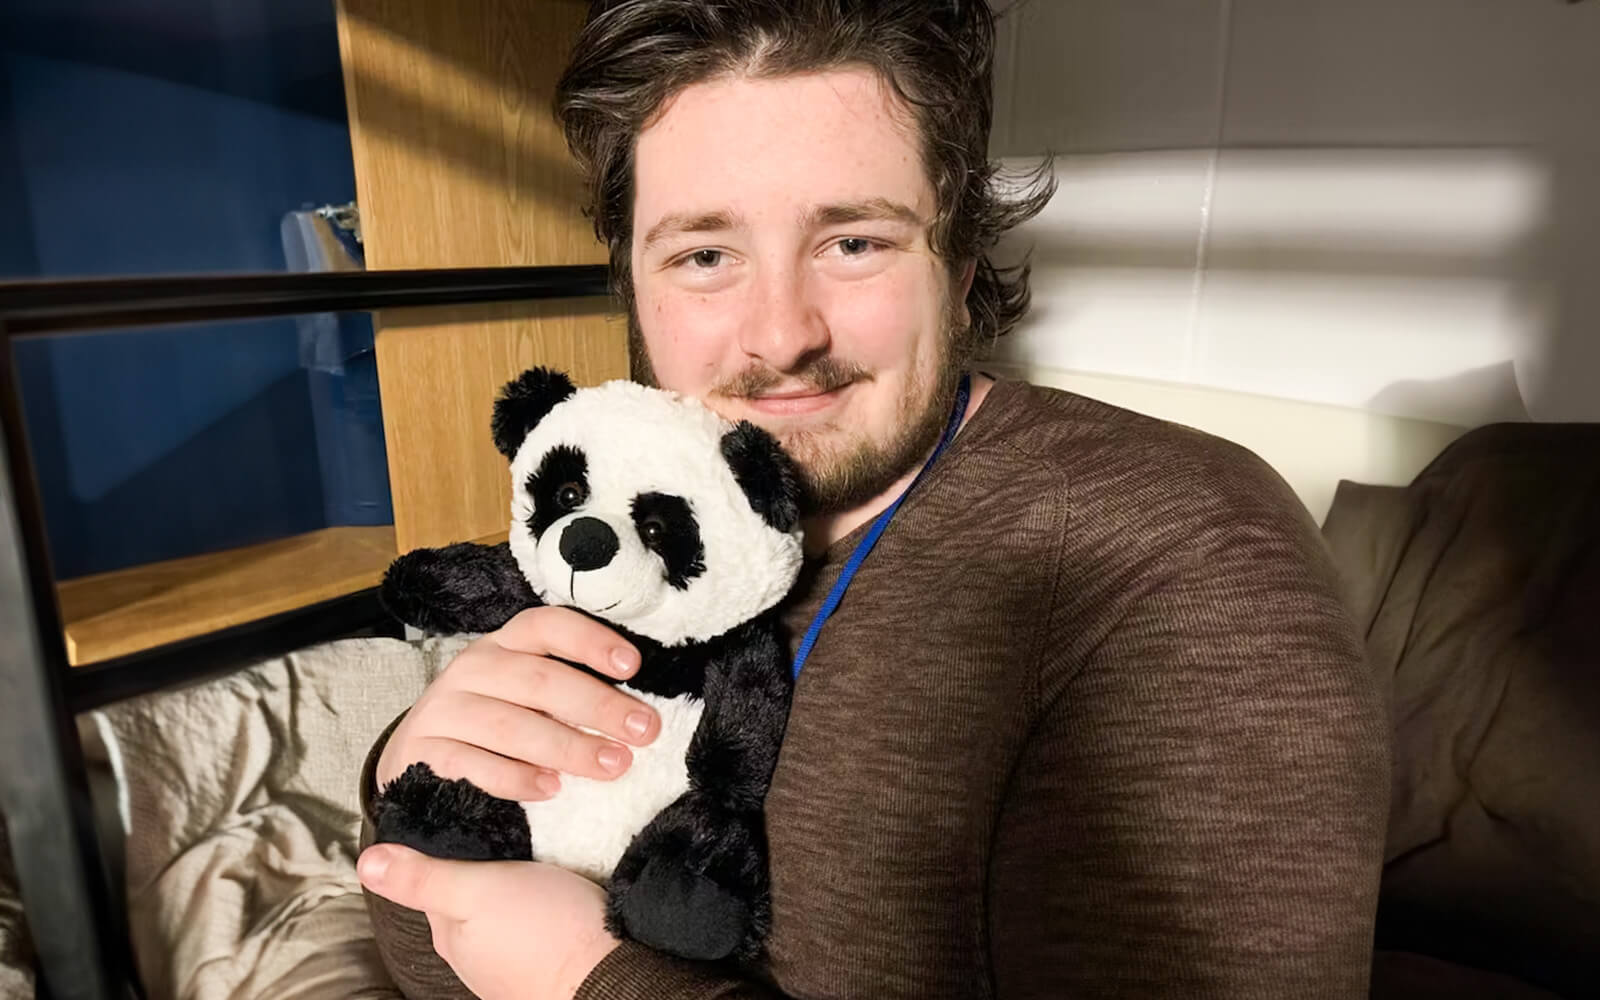 Man smiling while hugging Pokey the Panda